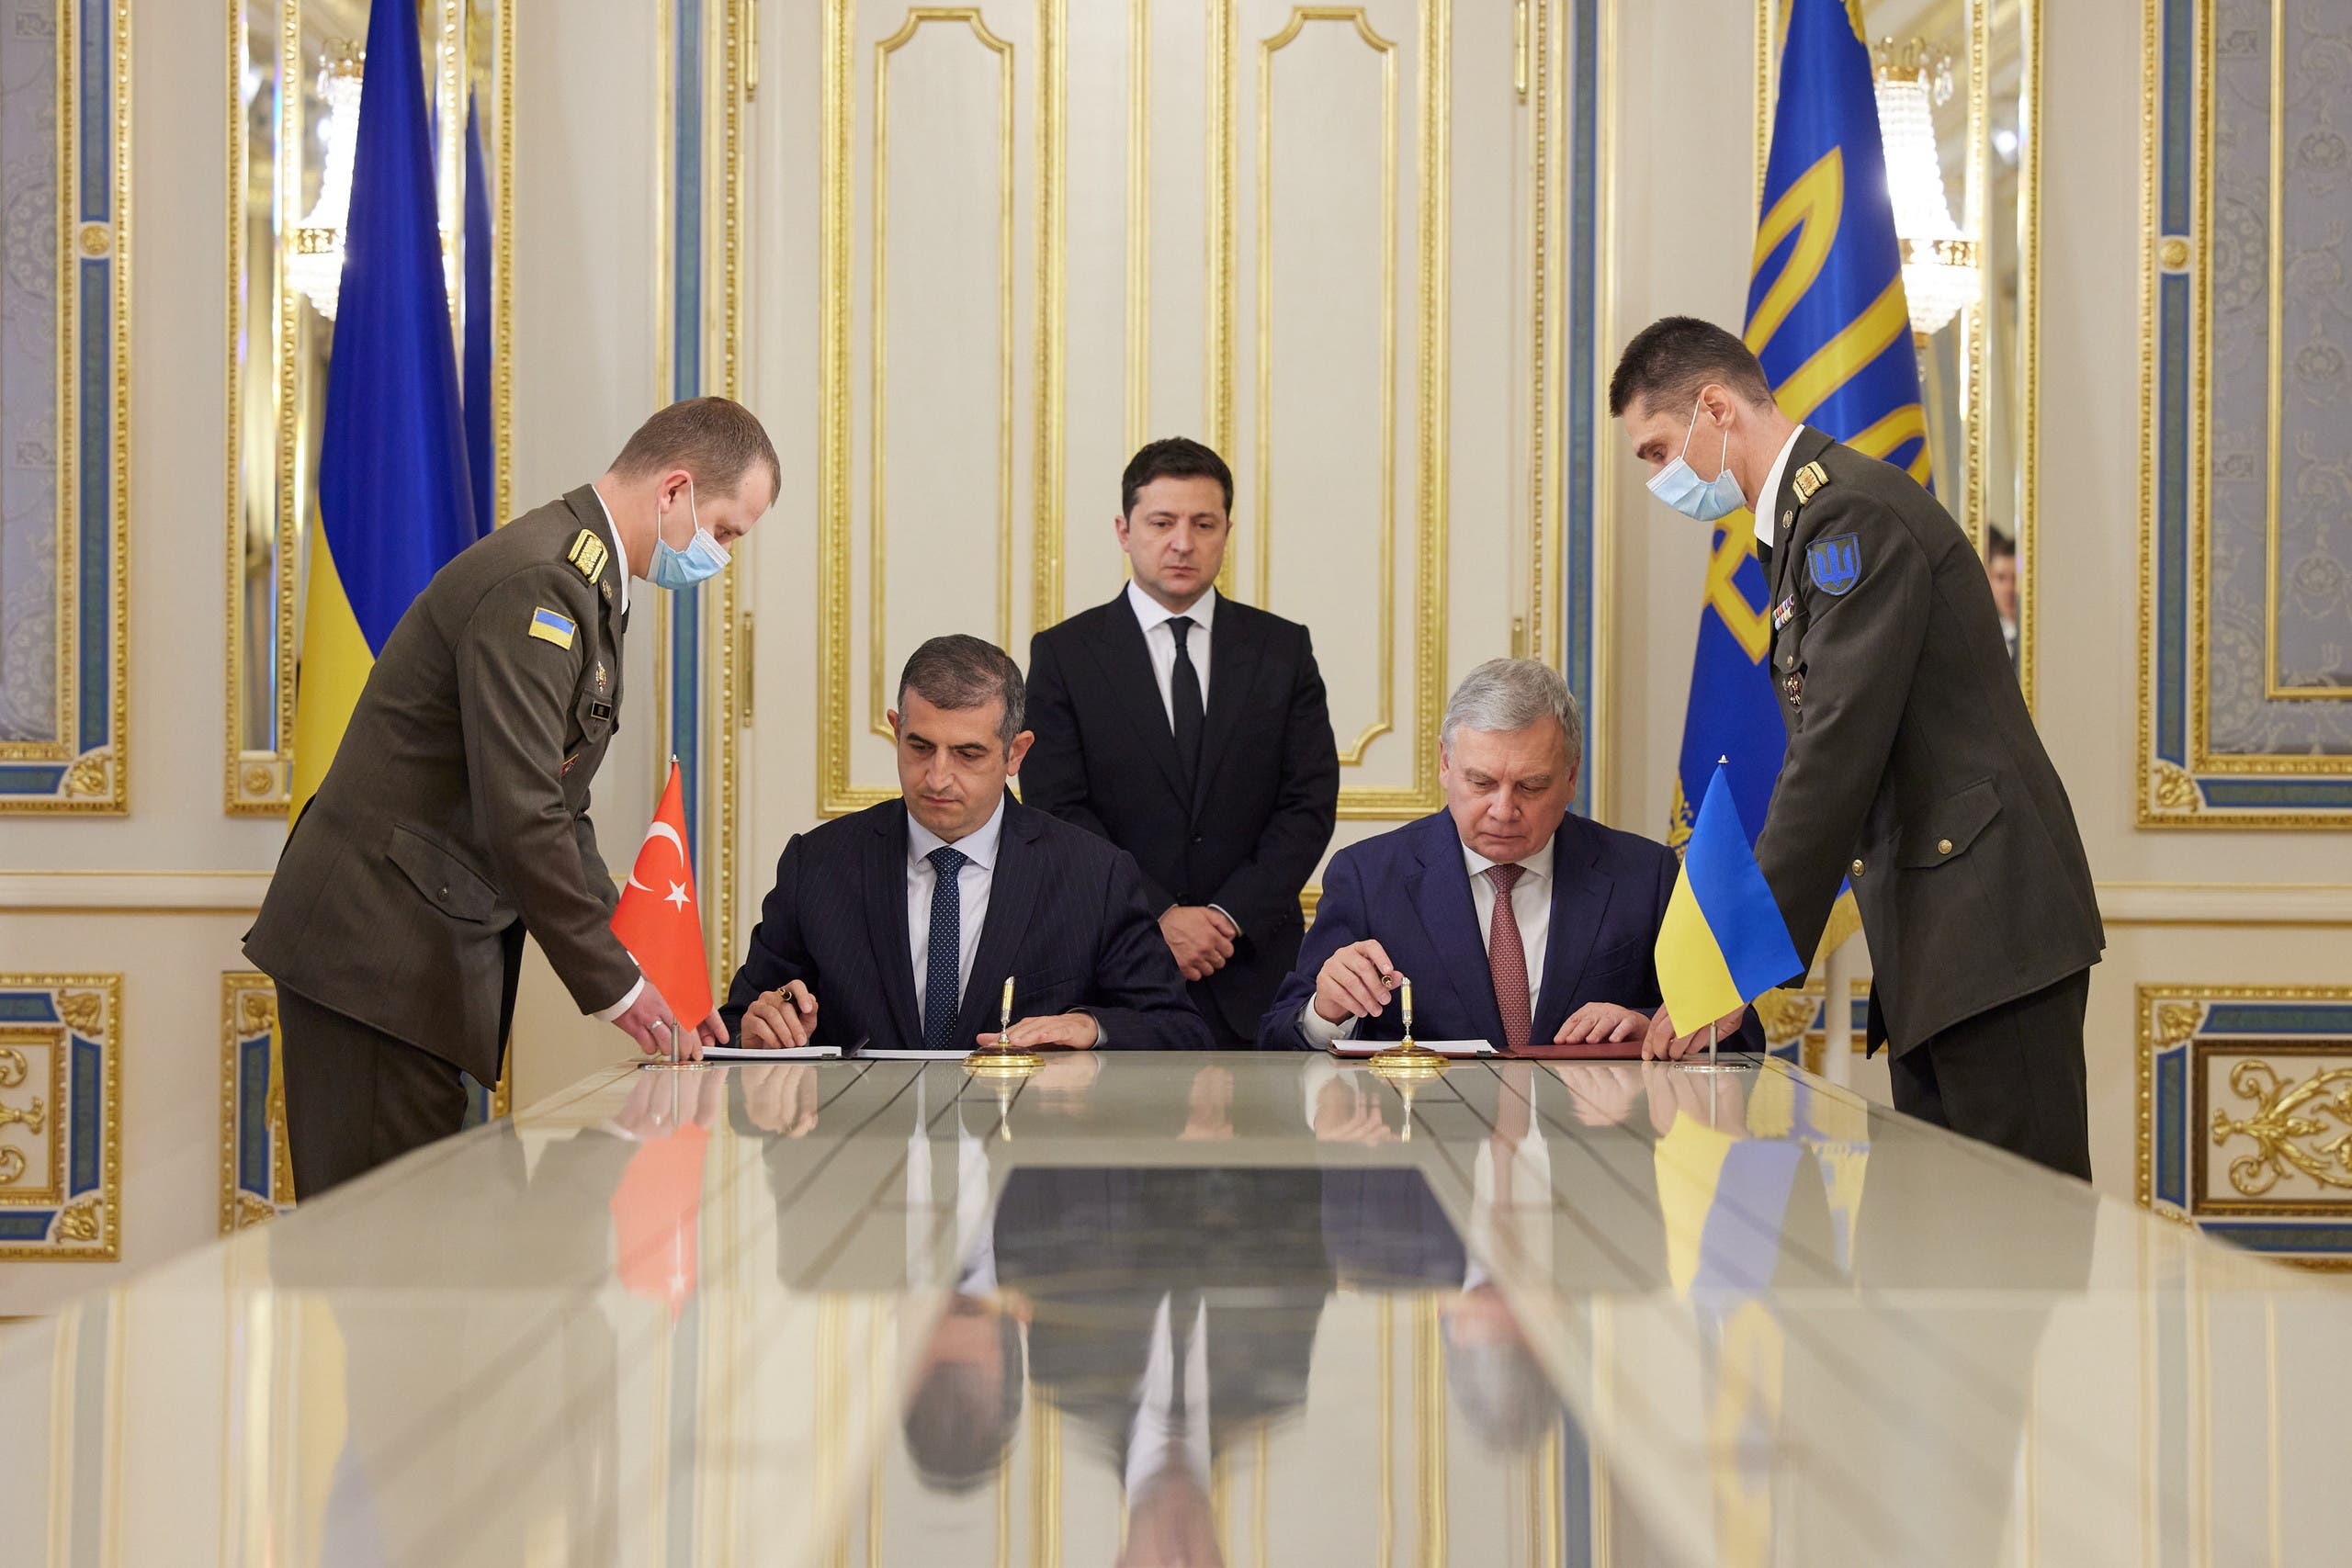 توقيع اتفاق في سبتمبر الماضي بين تركيا وأوكرانيا حول التدريب وصيانة المسيرات التركية 